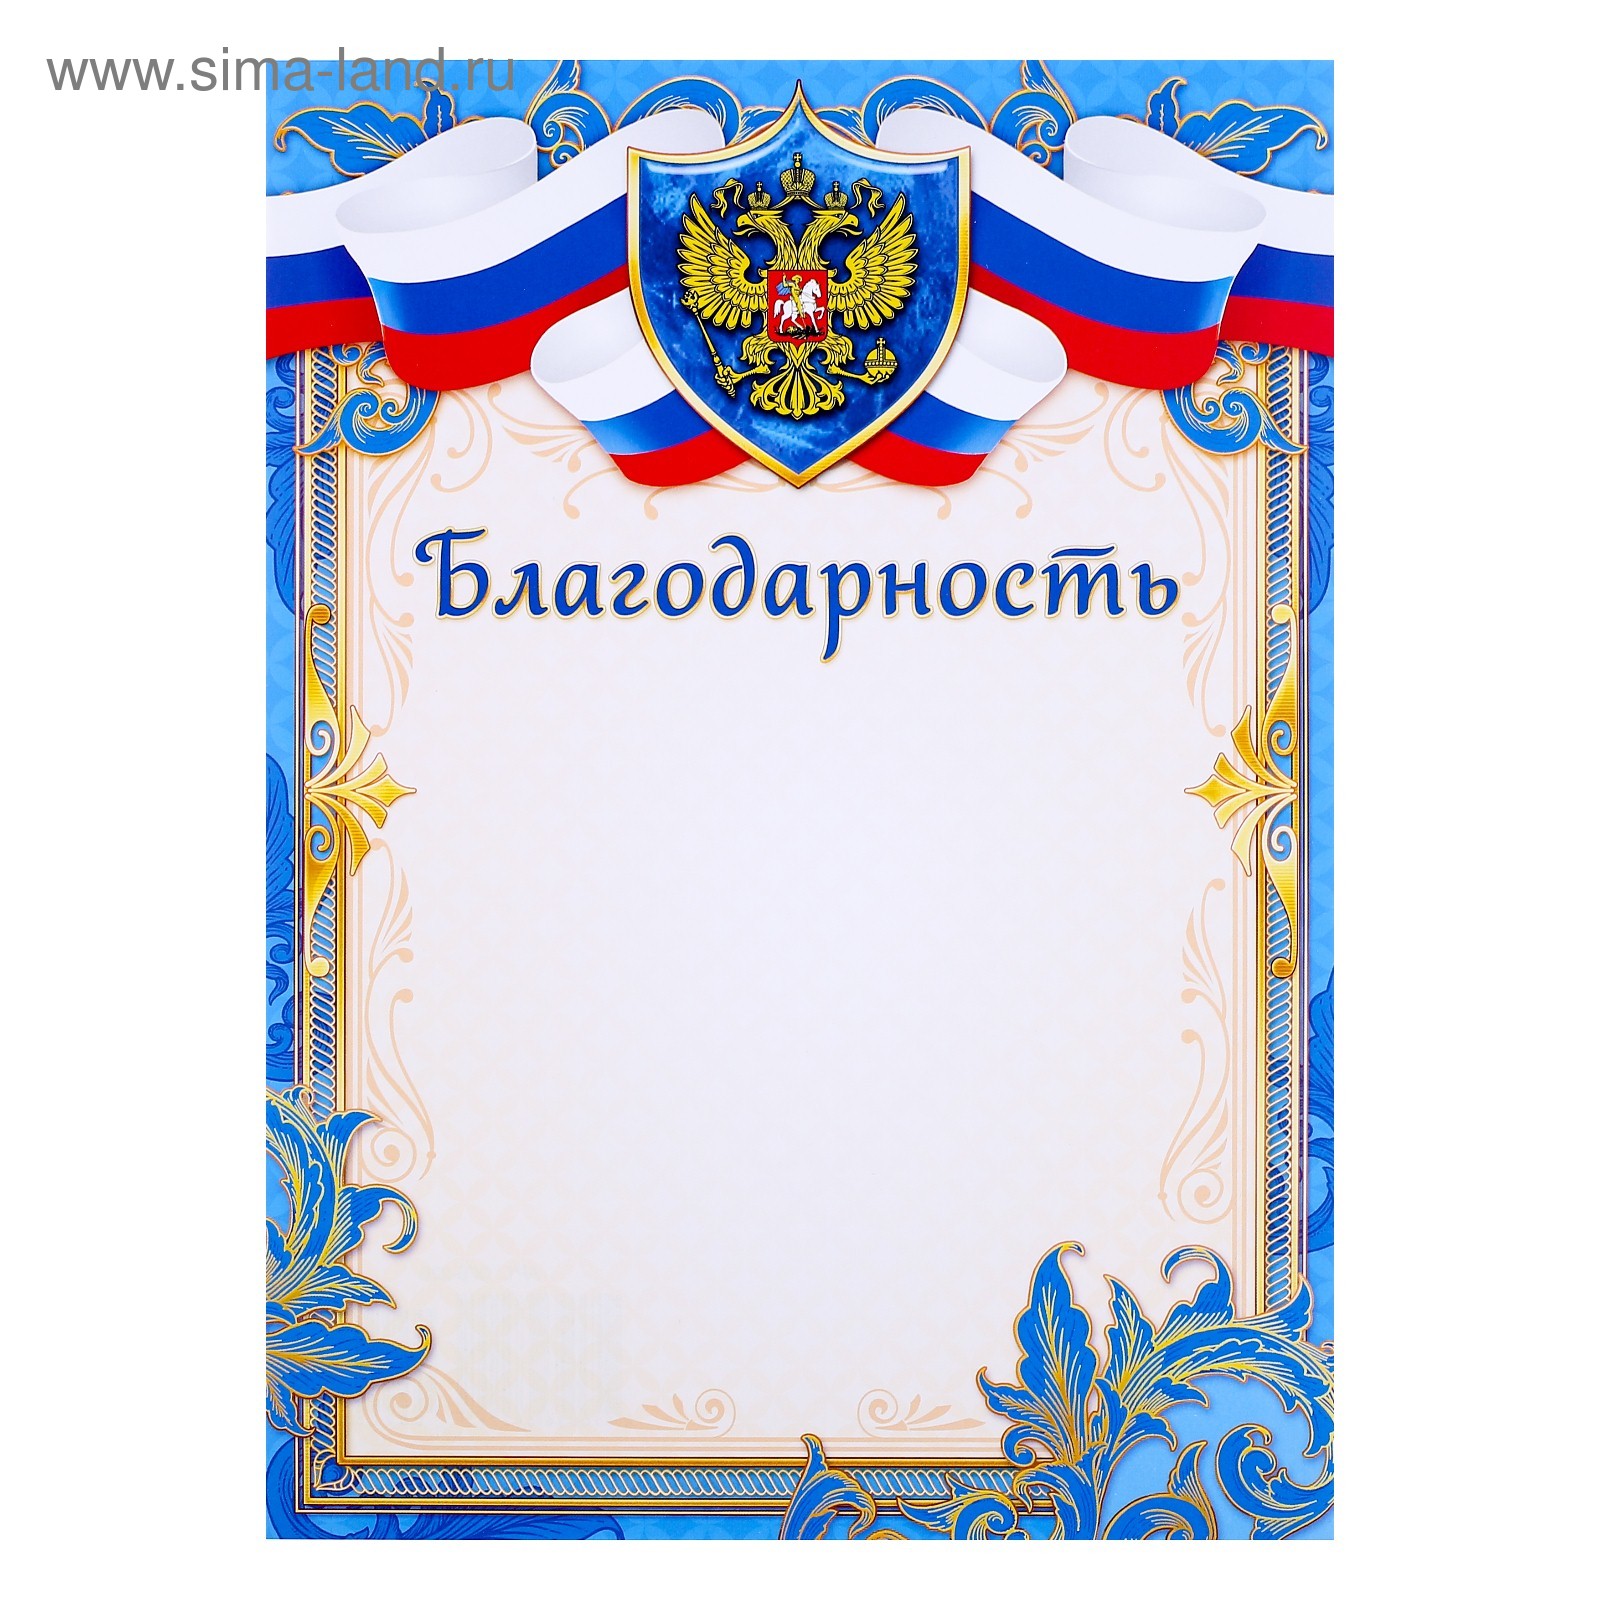 Благодарность с российским флагом